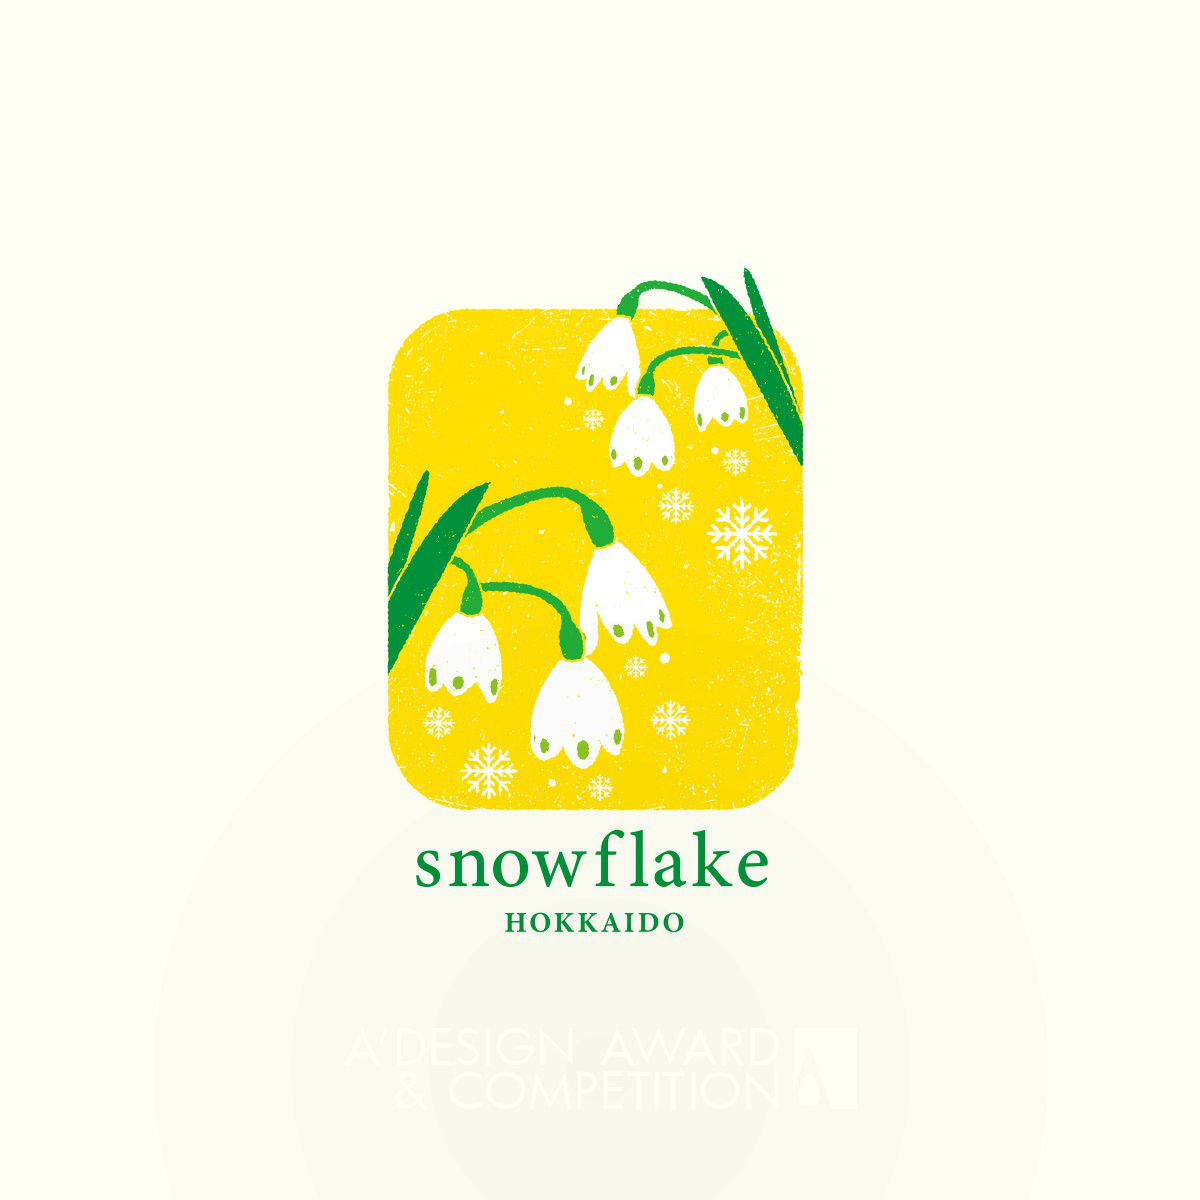 Nisshin Seifun Group Snowflake <b>Logos and Branding